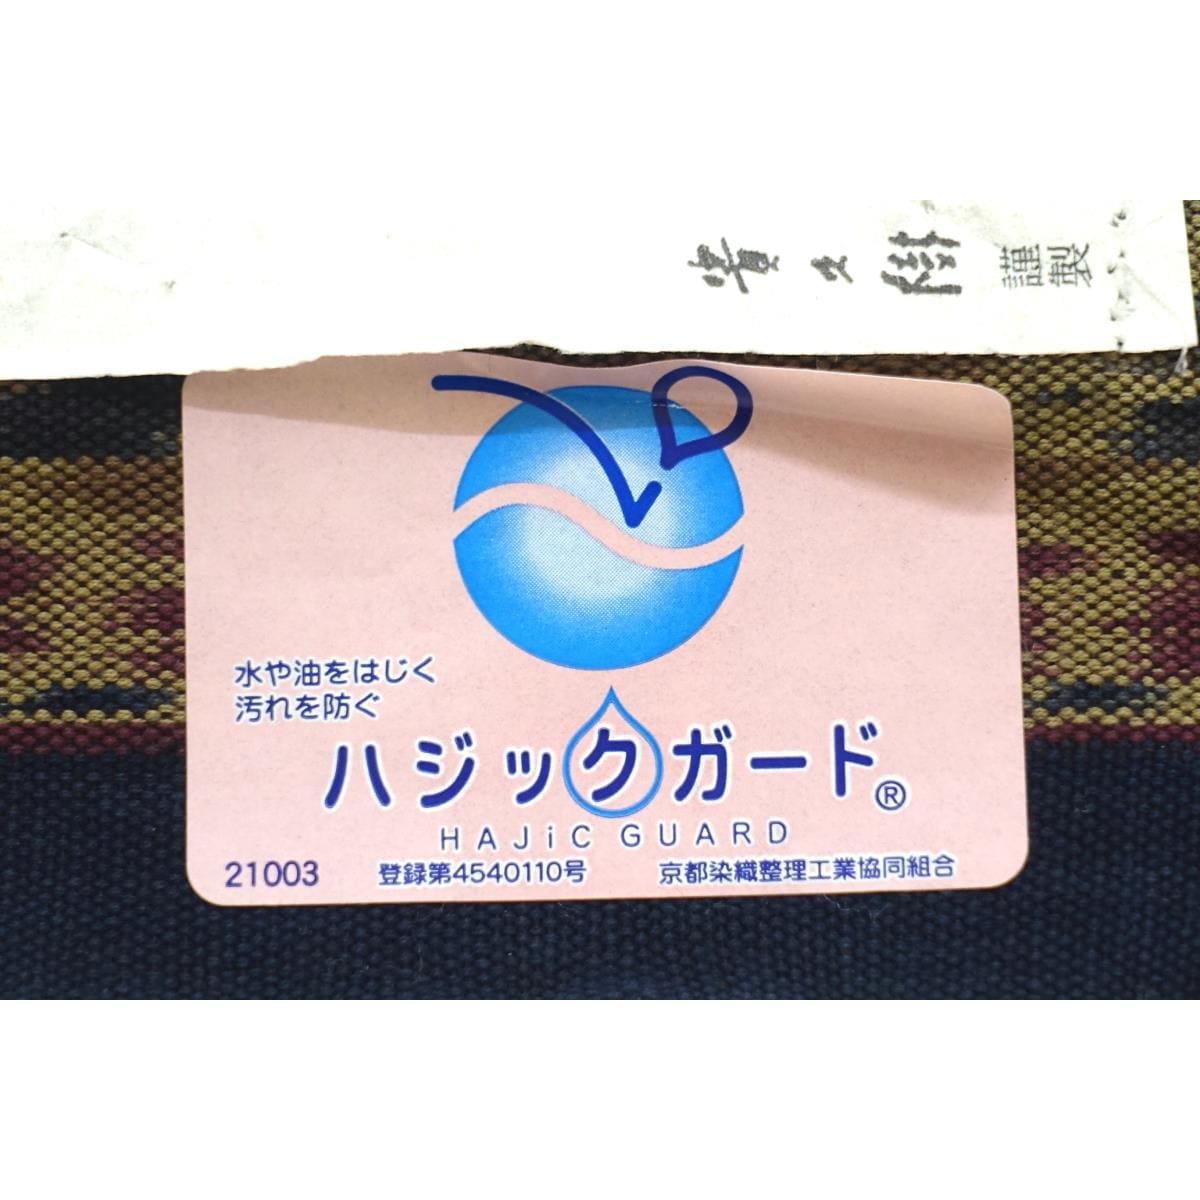 [Unused items] Nagoya obi Takakuki Ikat Zento pattern